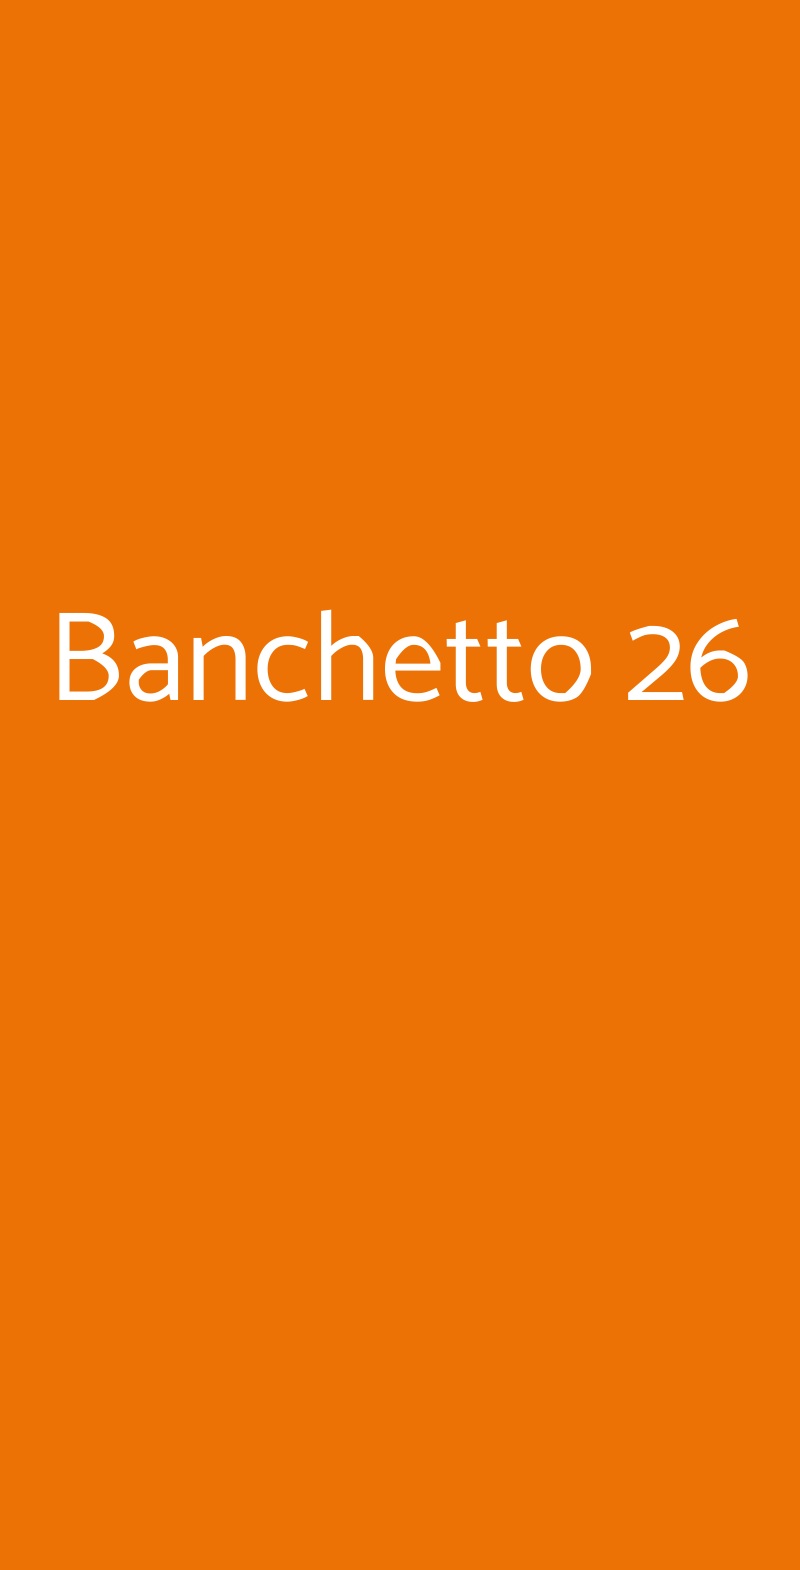 Banchetto 26 Roma menù 1 pagina